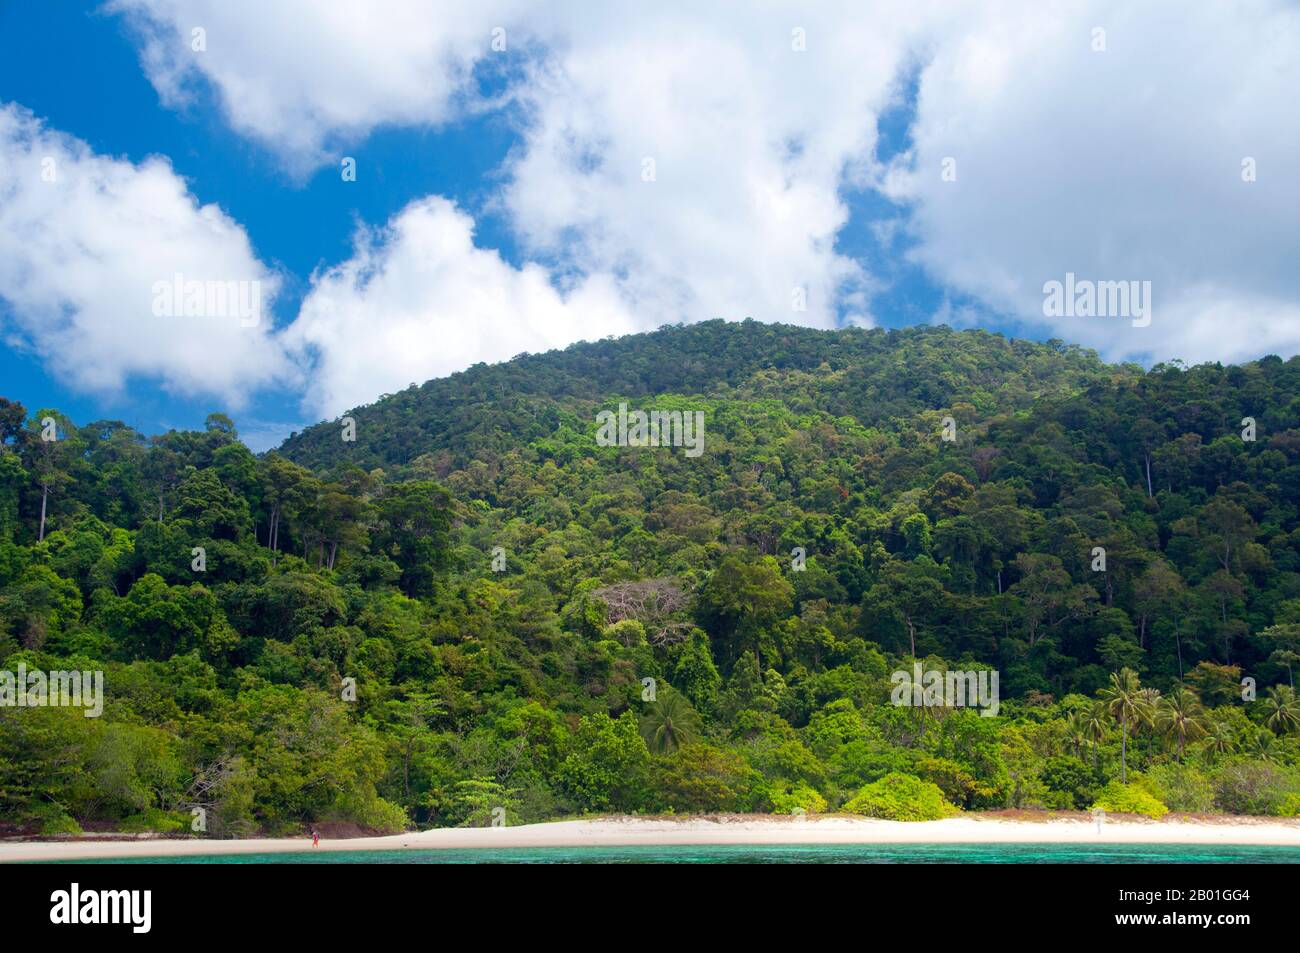 Thailand: Ko Adang, Ko Tarutao Marine Nationalpark. Ko Adang ist etwa 30 12 groß und fast vollständig von tropischem Regenwald bedeckt. Die Insel ist berühmt für ihr klares Wasser, feine Quarzstrände und herrliche Korallenriffe, die ein Lebensraum für Schwärme bunter Fische und eine Vielzahl anderer Meeresbewohner bieten. Das Innere von Ko Adang ist auch wunderschön unberührt, mit mehreren Wasserfällen, die von den zentralen Höhen (703 Meter oder 2.300 Fuß) herunterfallen, vor allem Nam Tok Chon Salat. Stockfoto